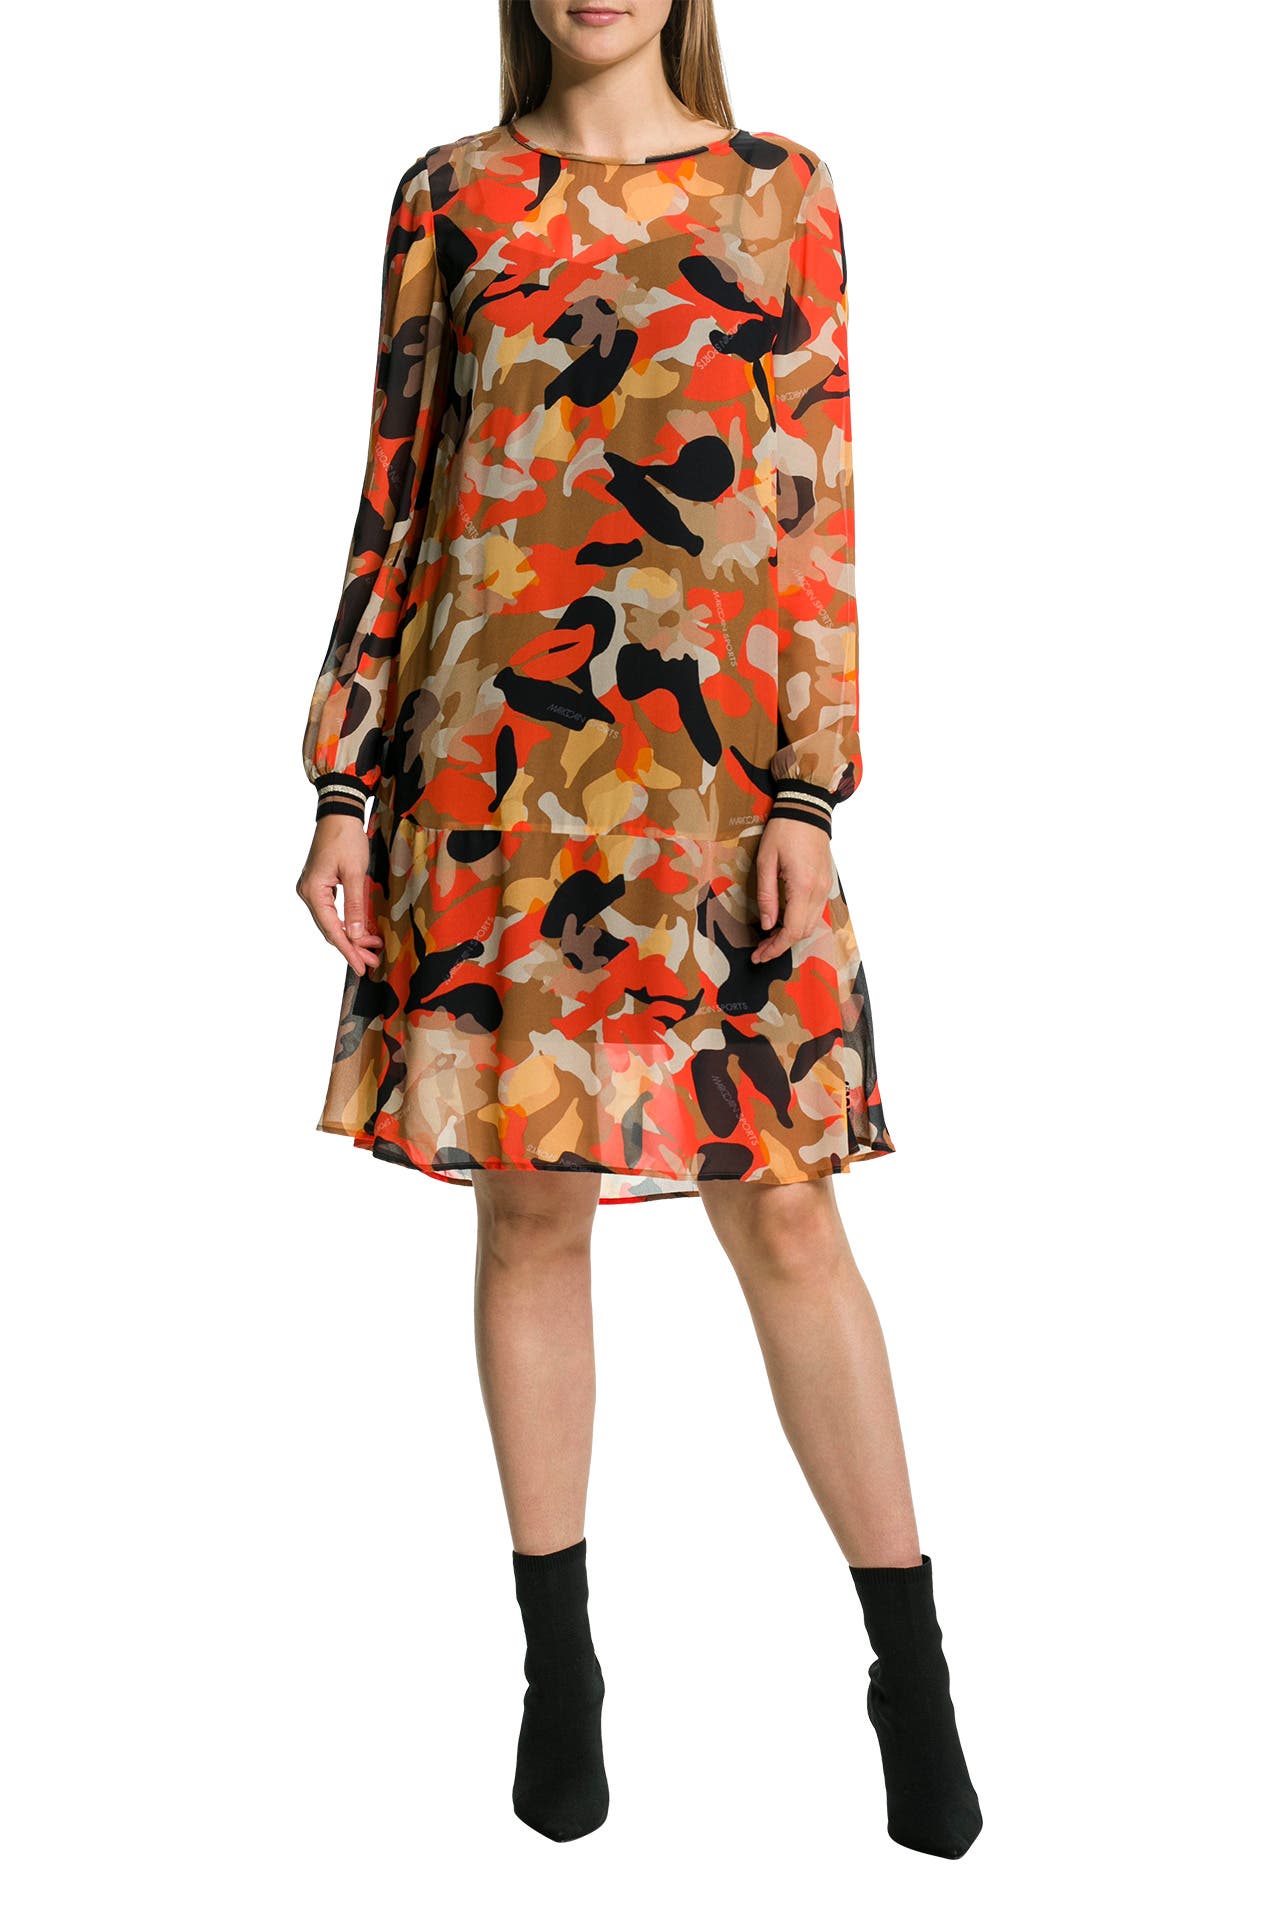 Outletcity | » - mehrfarbig CAIN online Kleid MARC günstig kaufen